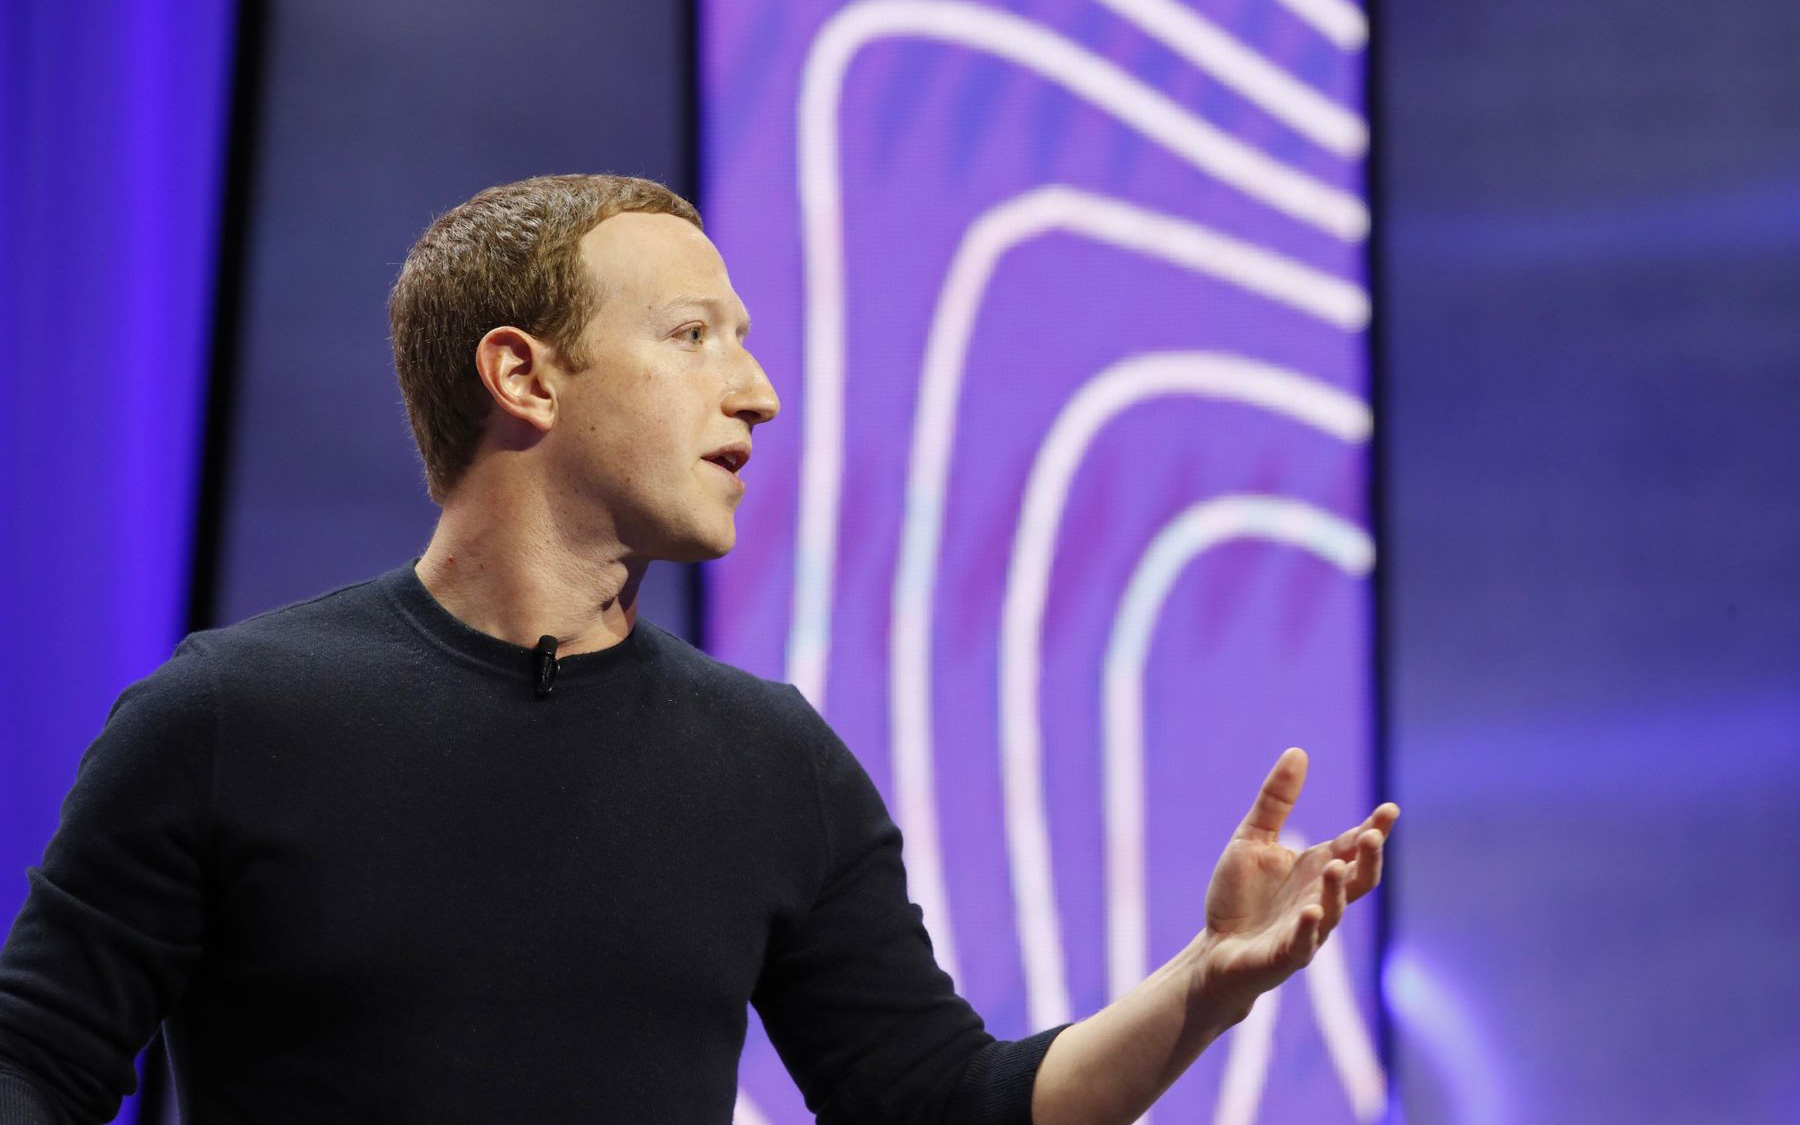 Facebook thiệt hại 56 tỷ USD vì bị tẩy chay, CEO Mark Zuckerberg xuống vị trí giàu thứ 4 thế giới nhưng cái tên vượt mặt mới là điều đáng chú ý